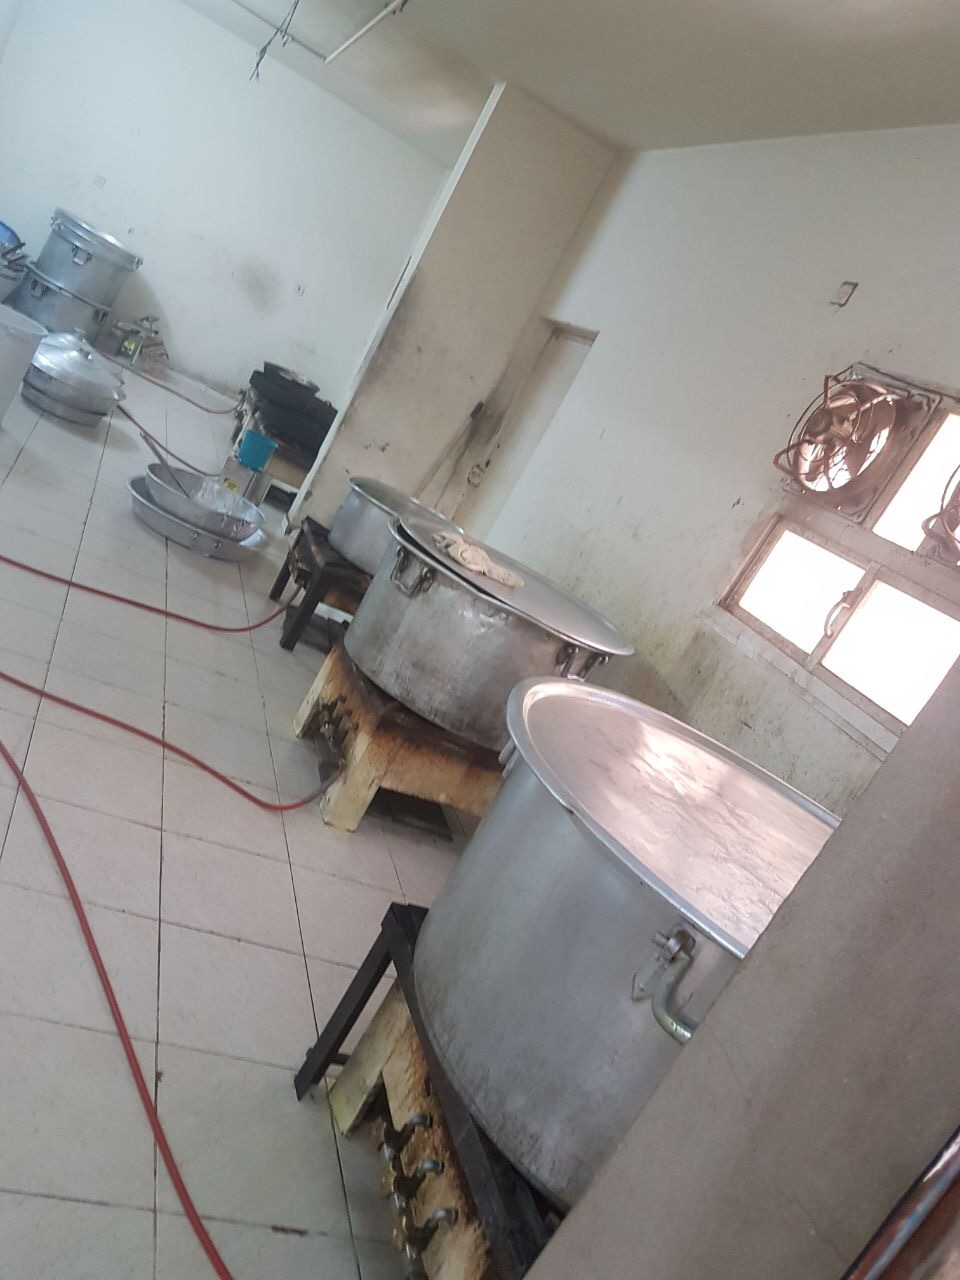 بالصور.. إغلاق مطبخ شهير بعزيزية مكة لمخالفة الاشتراطات الصحية